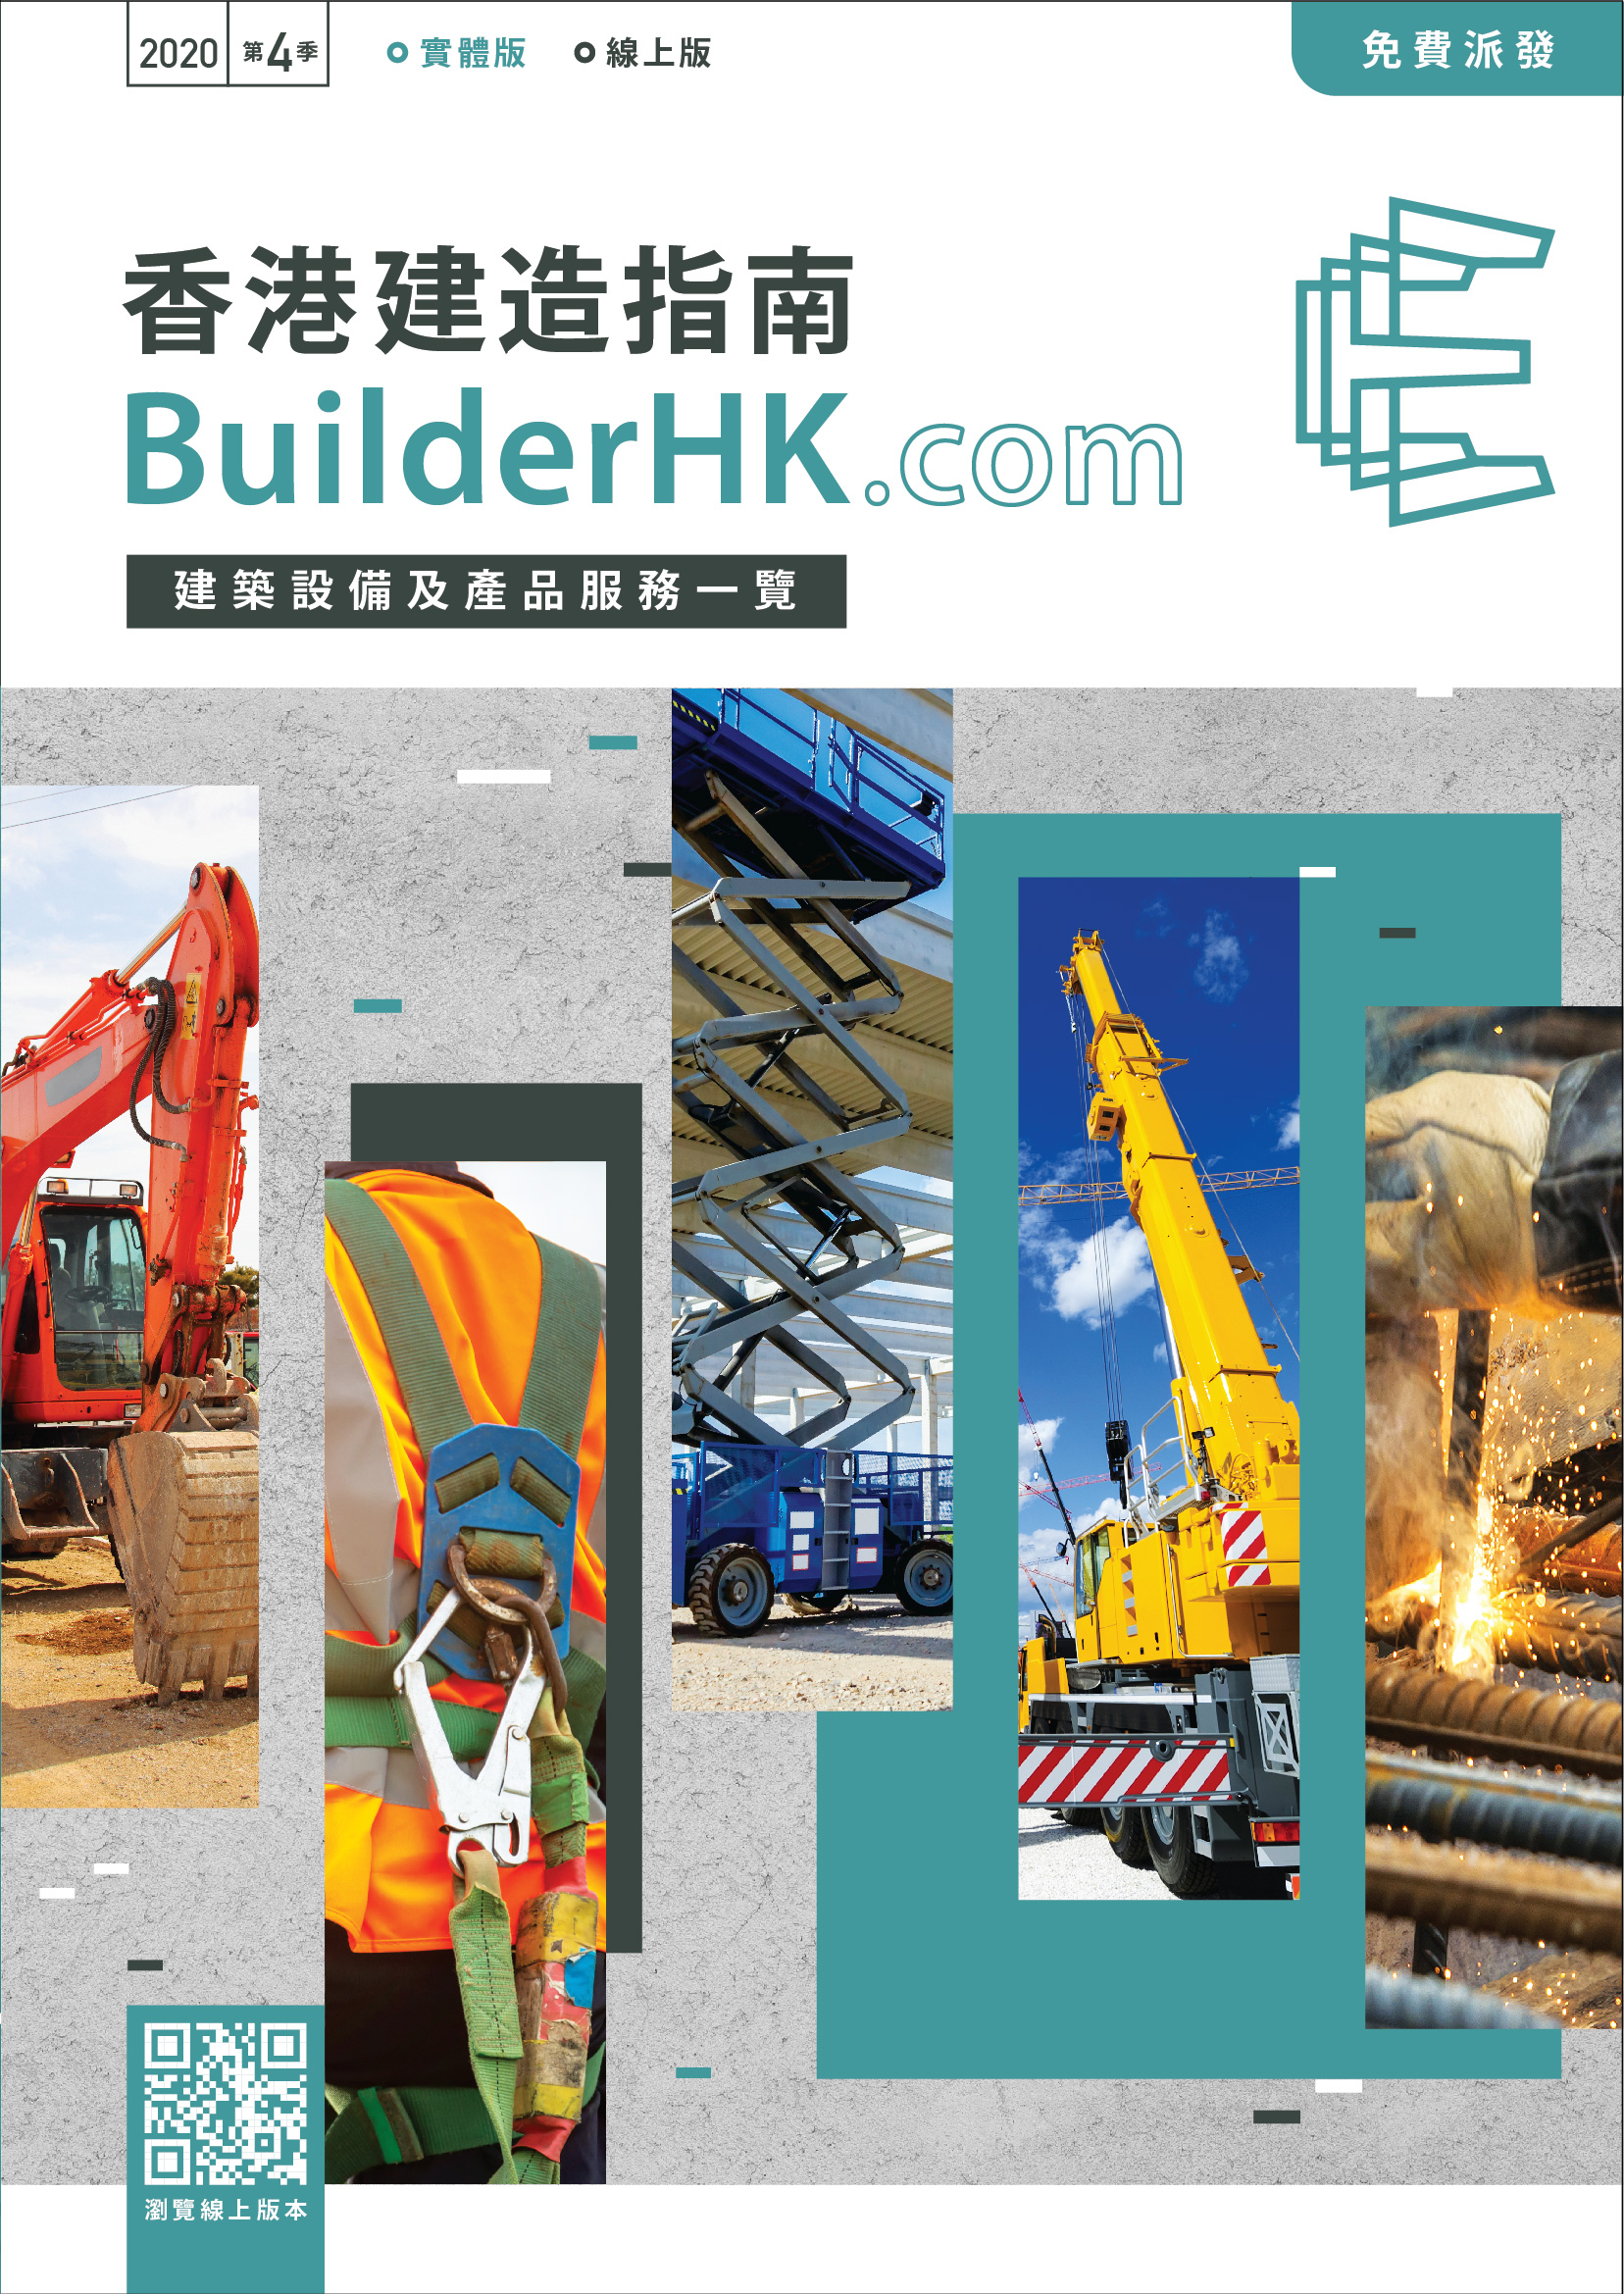 BuilderHK Booklet 2020 Q4